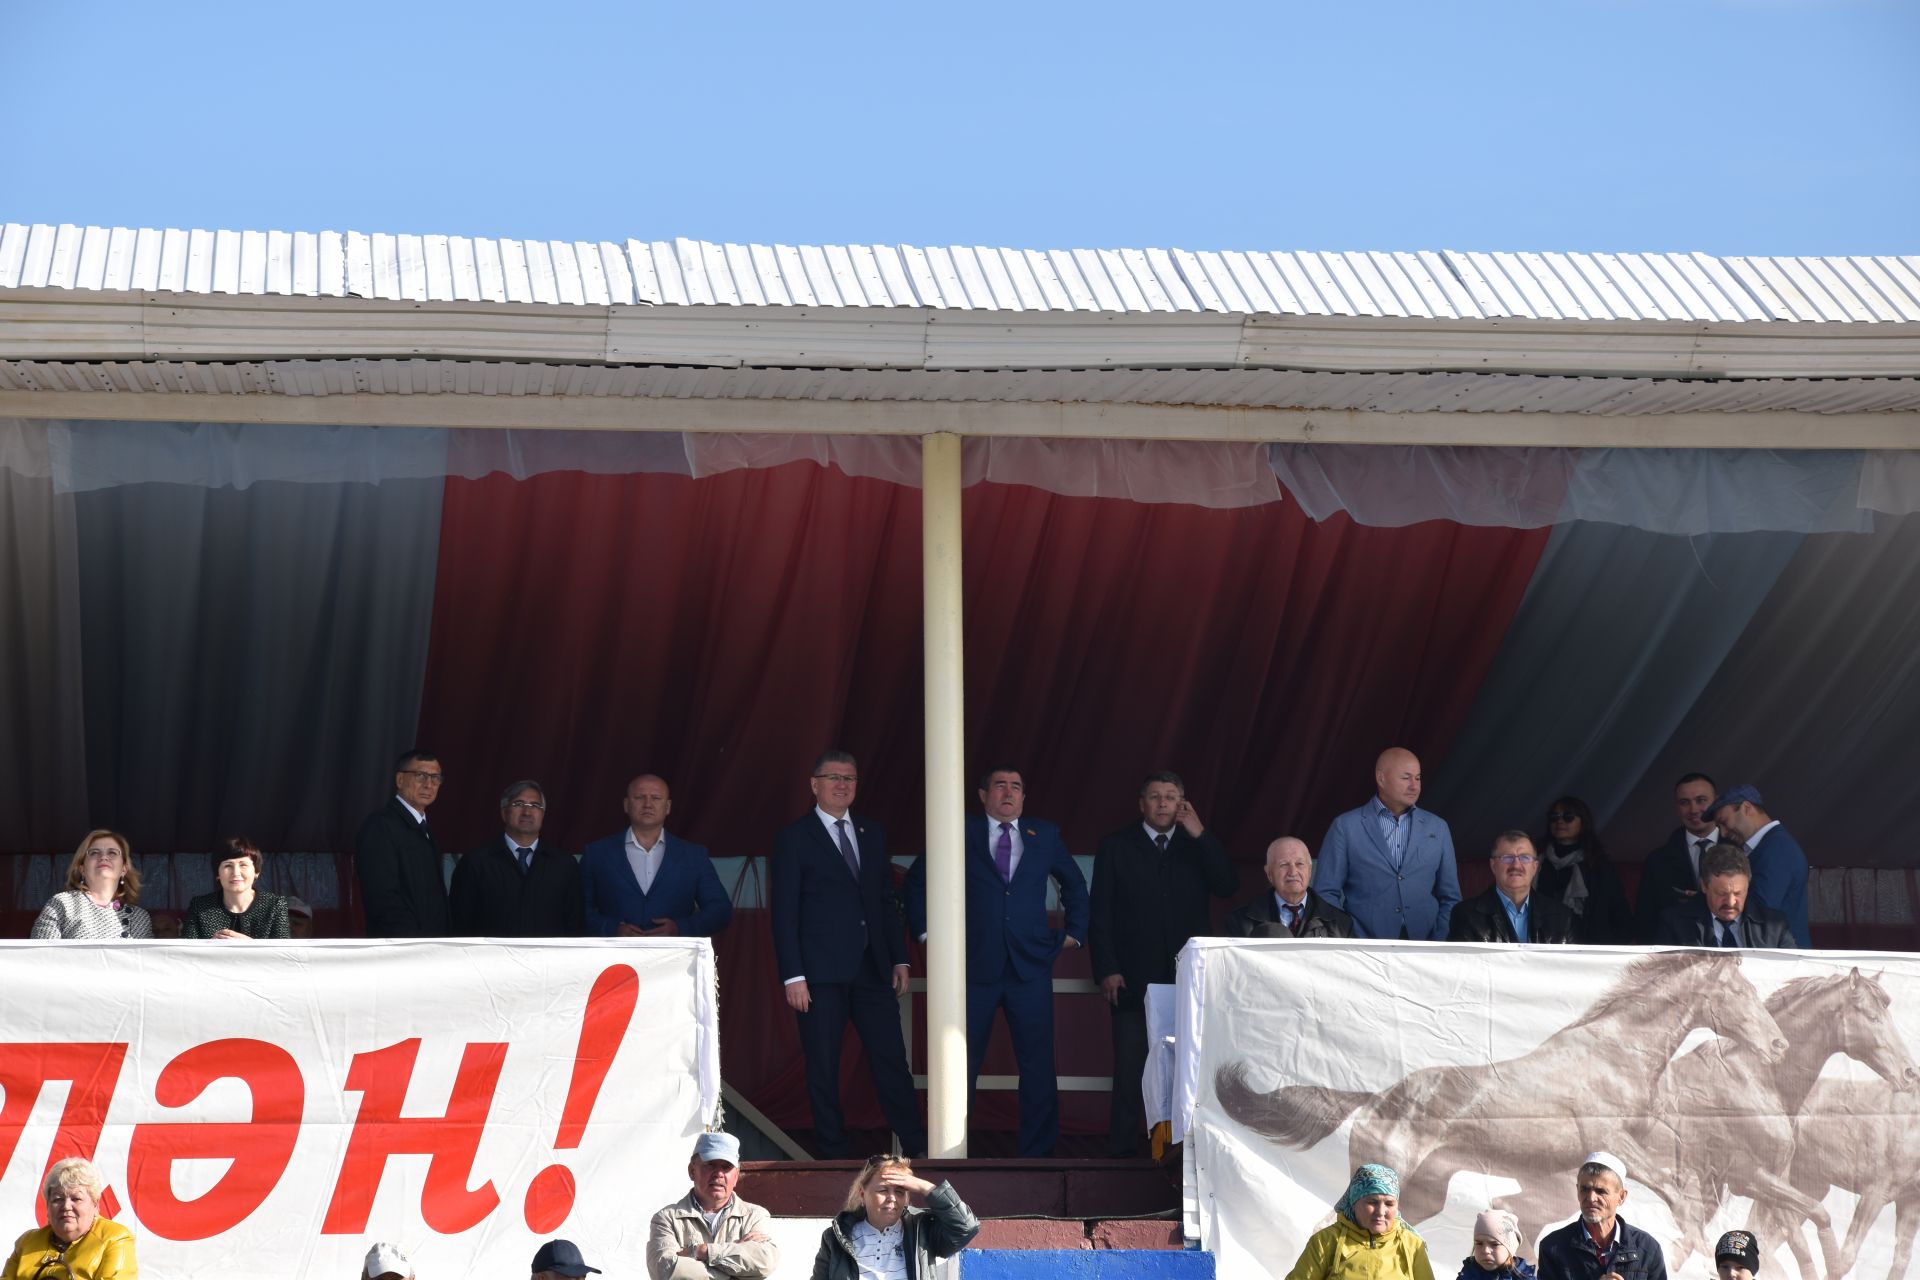 Глава Нурлатского муниципального района и города Нурлат Алмаз Ахметшин: «Нурлат – это наш общий дом»